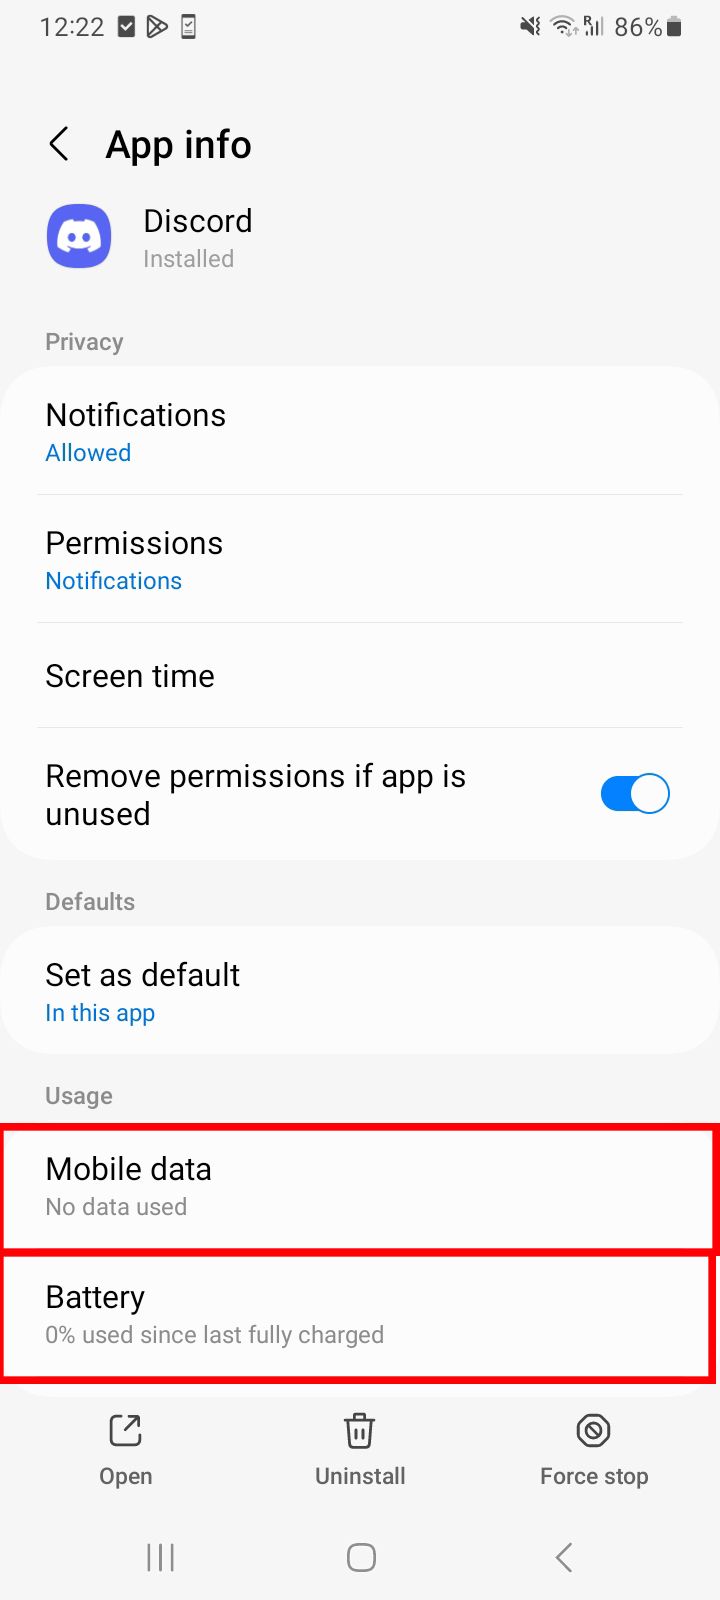 Tela de informações do aplicativo Android para Discord destacando bateria e dados móveis